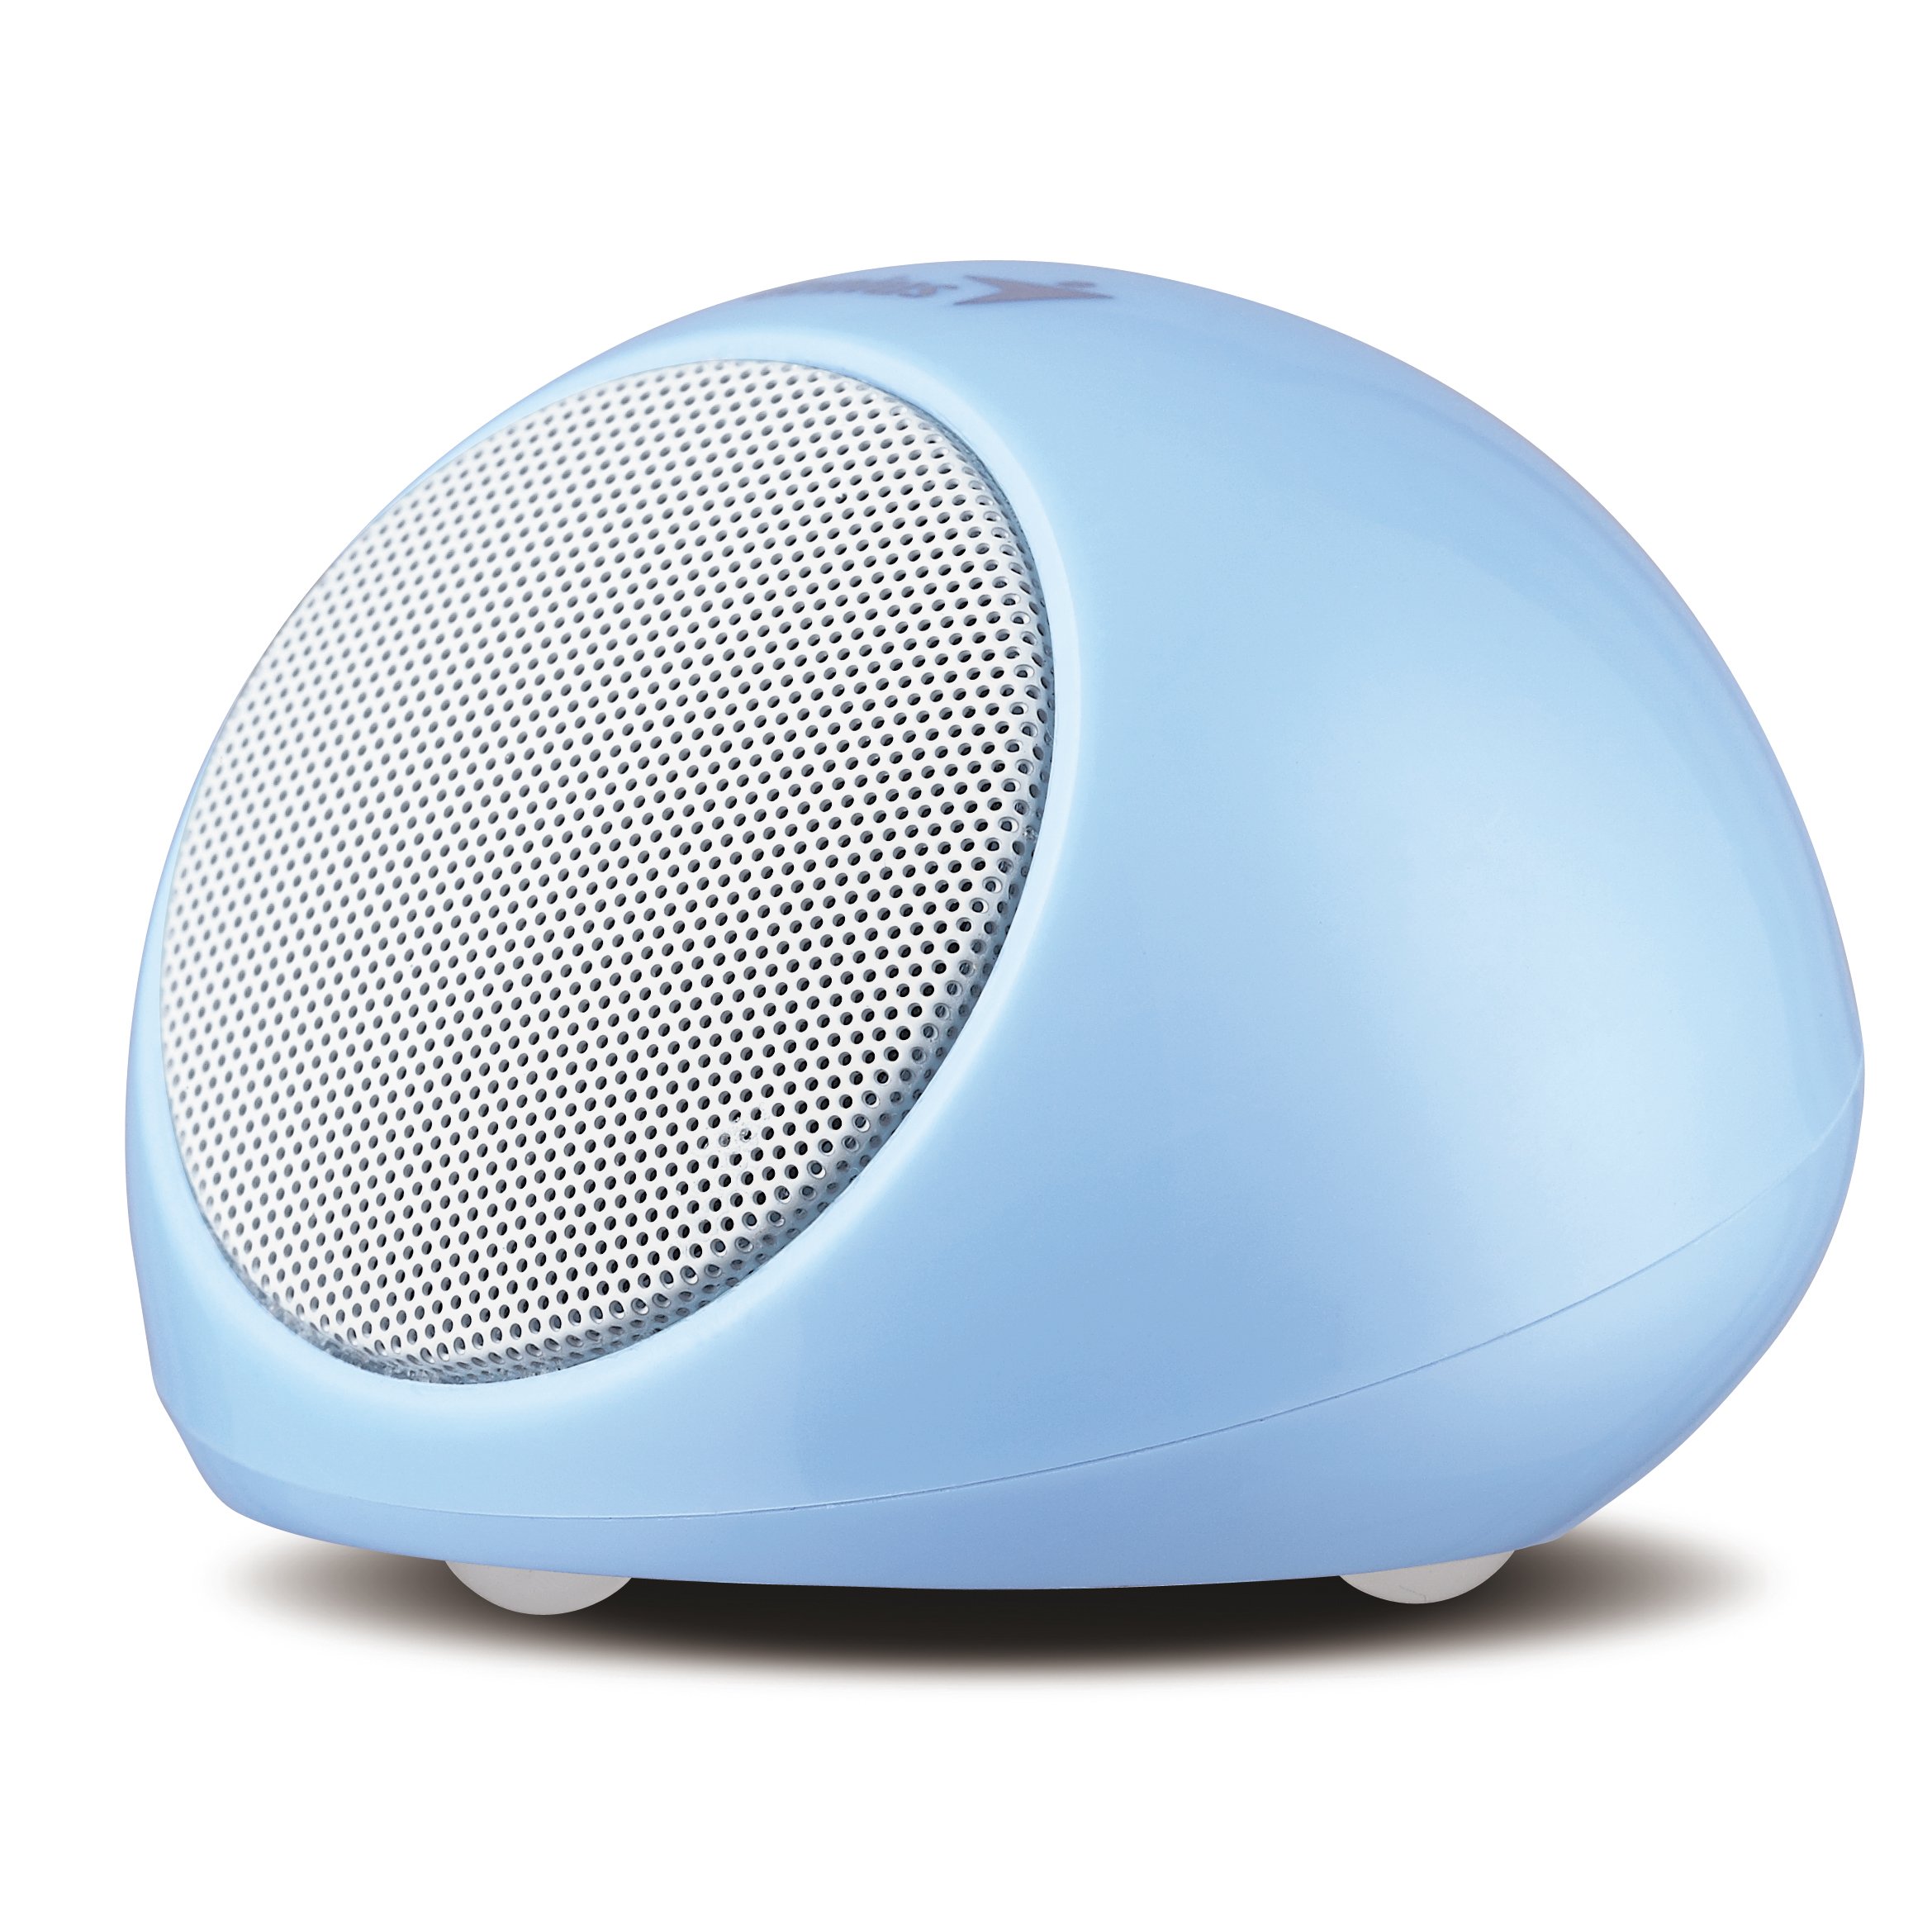 Genius SP-i170 Blue Mini Portable Speaker